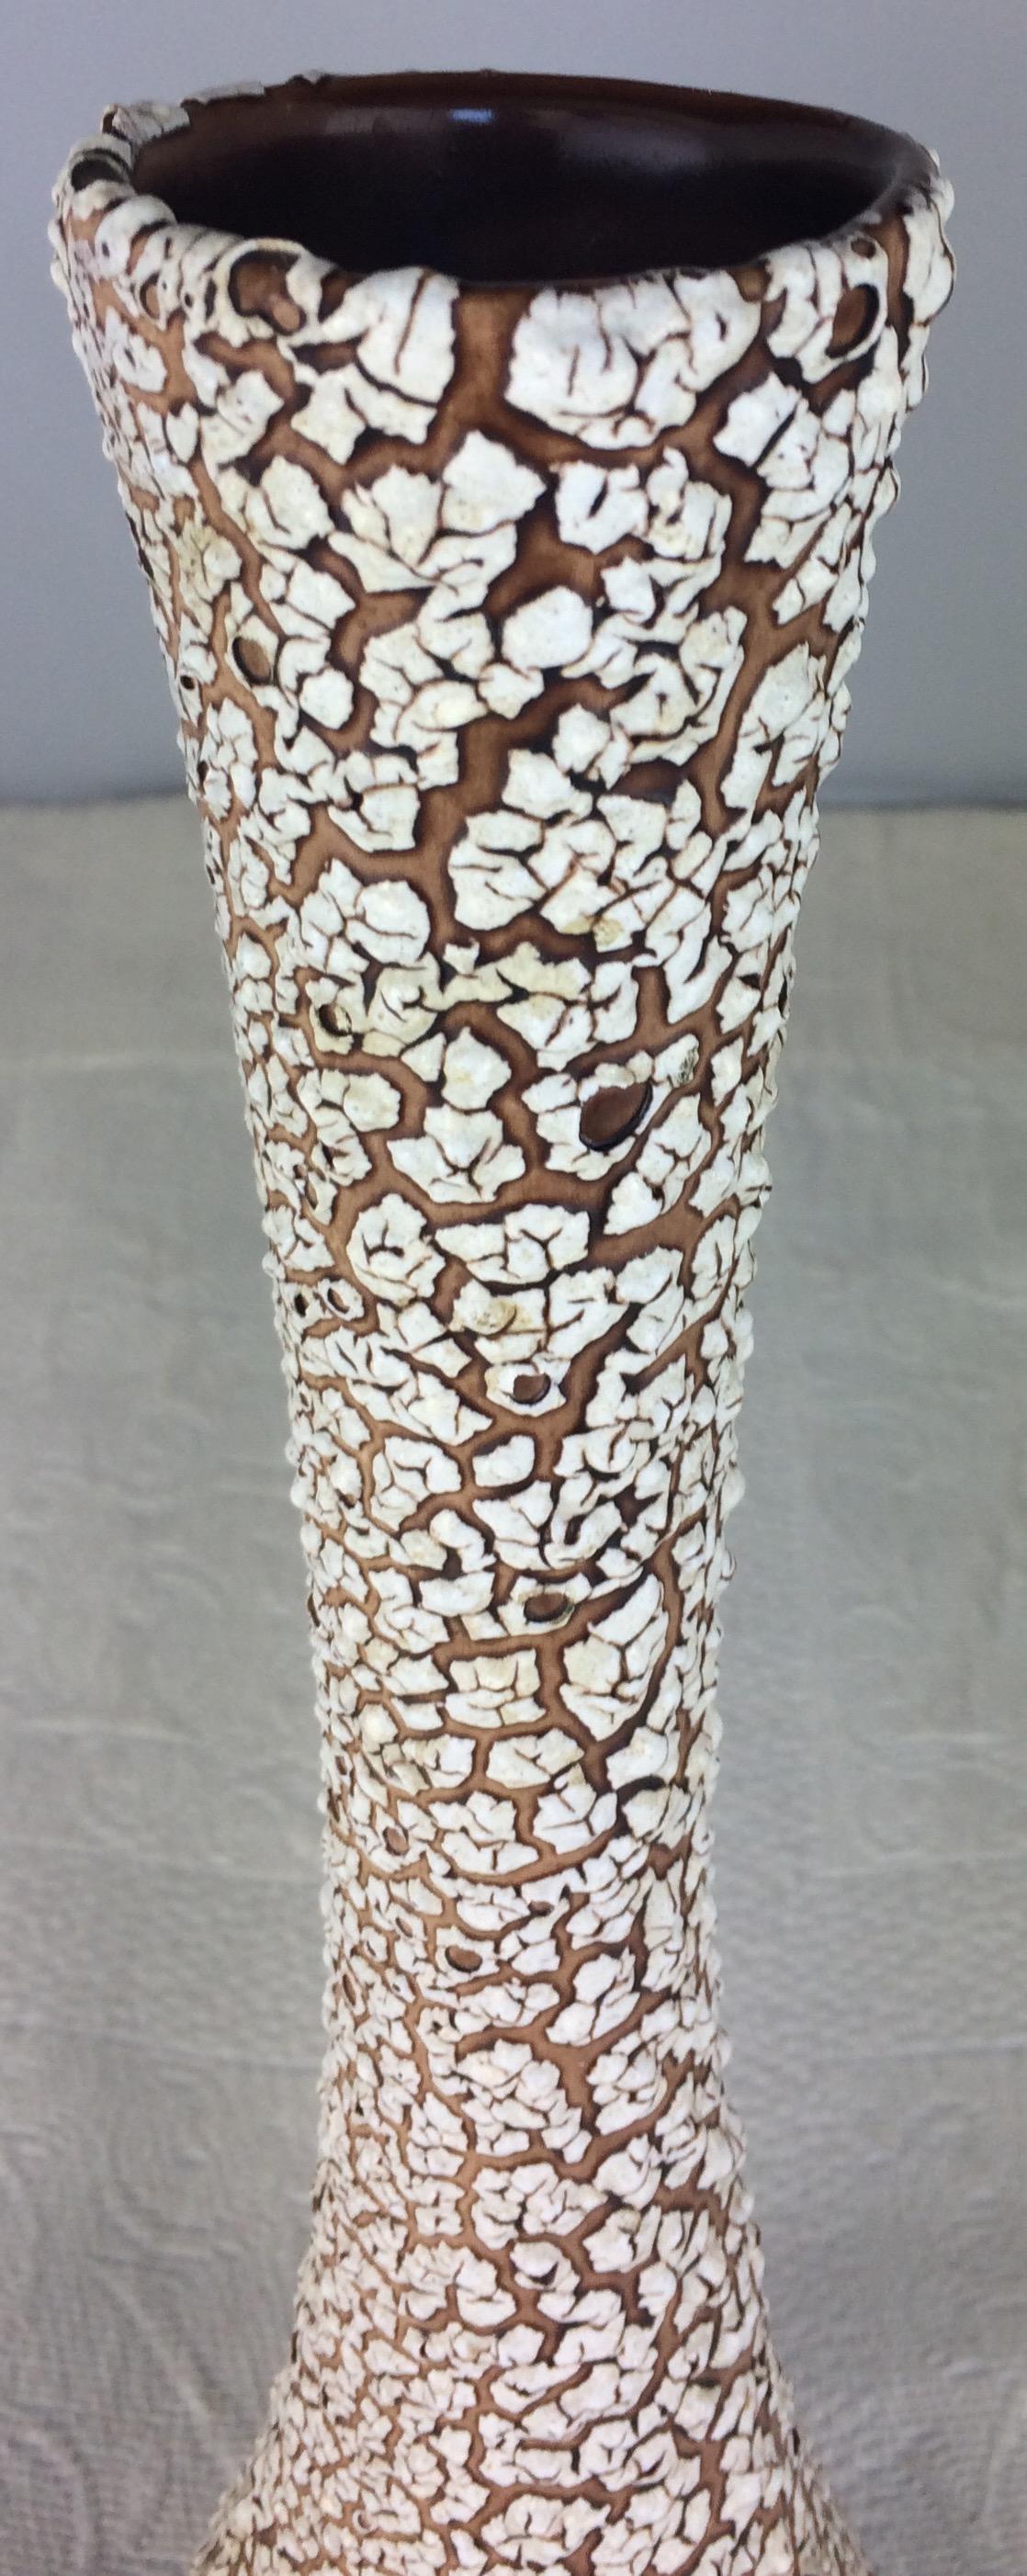 Cette grande pièce éblouissante, produite dans les années 1960, s'inspire de la poterie cyclope fabriquée par Charles Cart, en raison des fossettes volcaniques créées pendant la cuisson de la poterie, qui révèlent les couches situées sous la